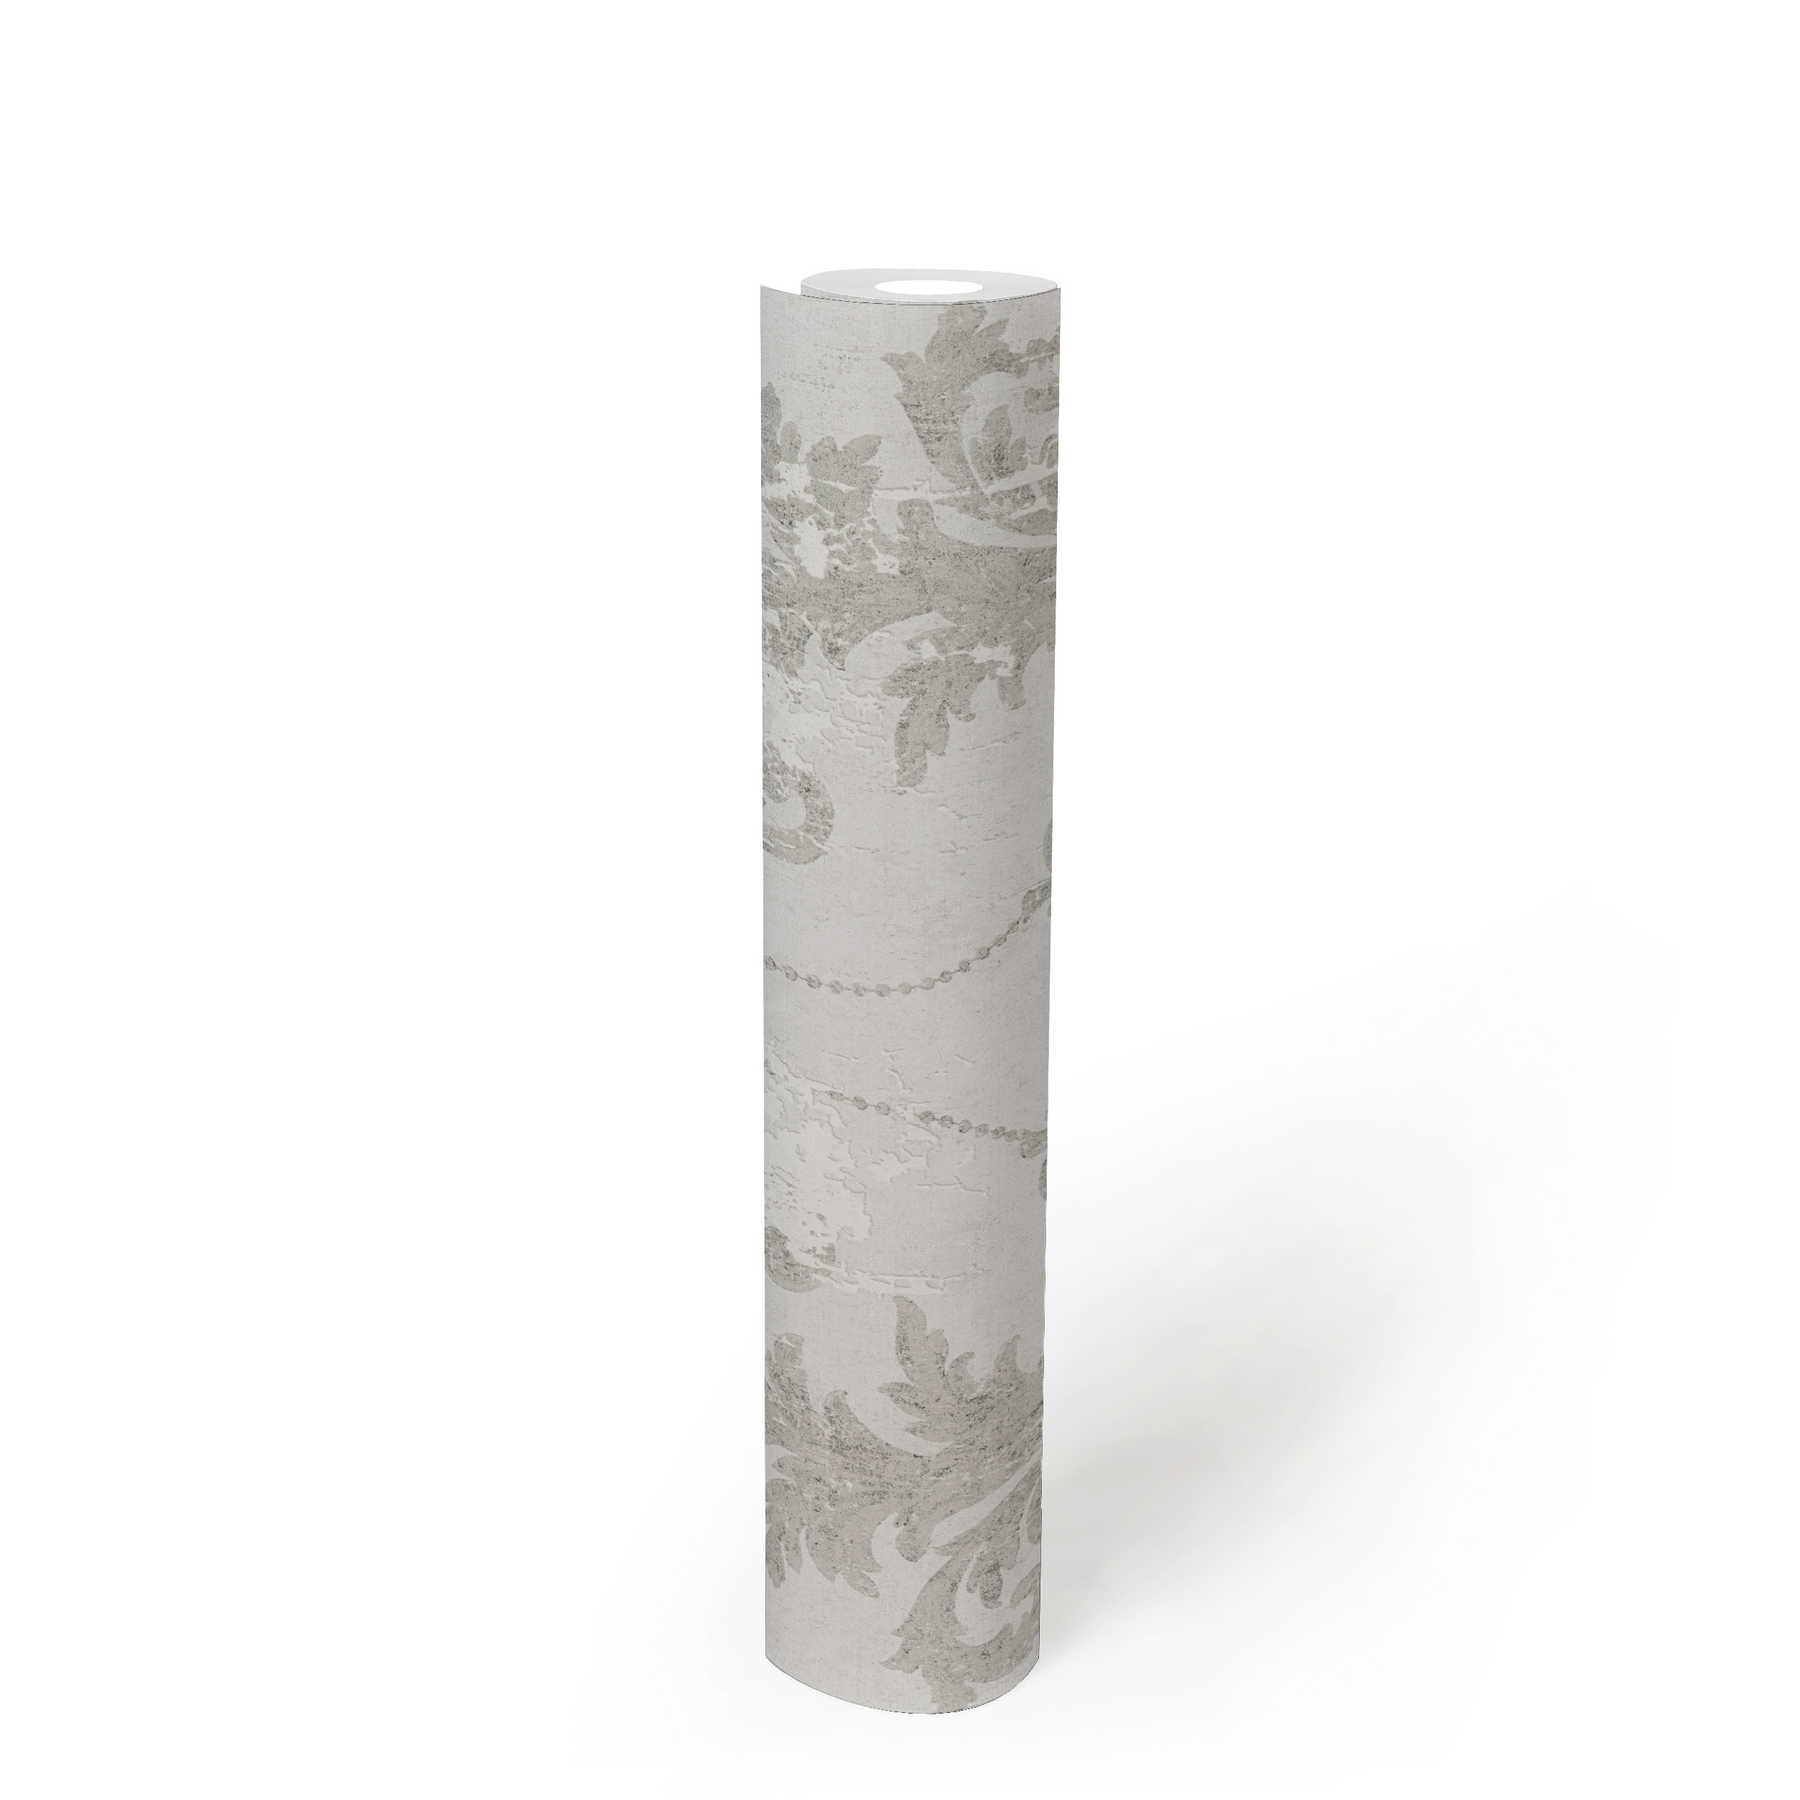             Papier peint avec ornements vintage & aspect usé - gris, blanc
        